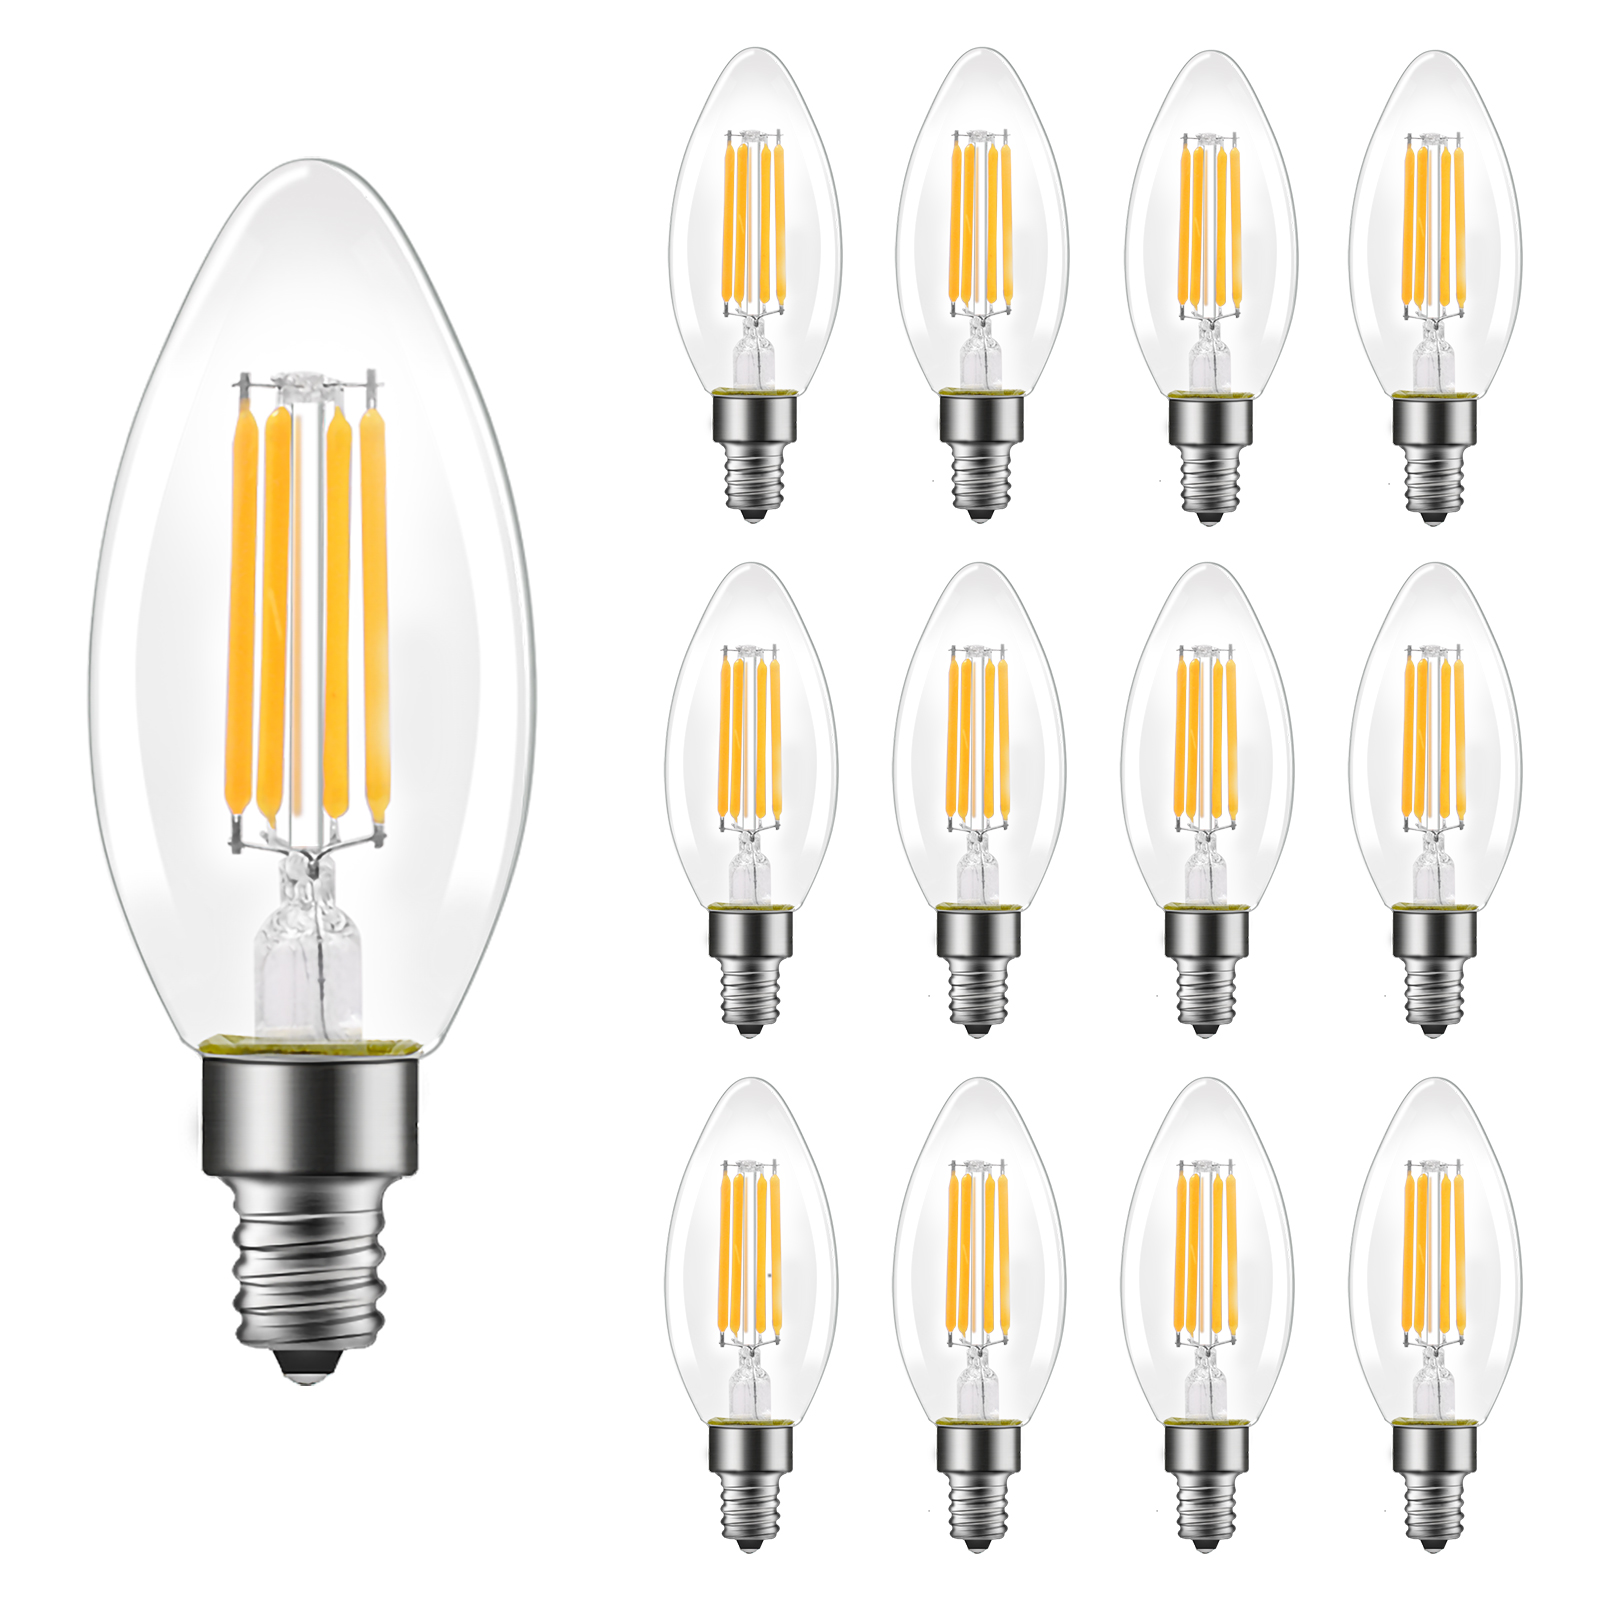 B11 LED Light Bulb, E12 Standard Base, 12 Pack 